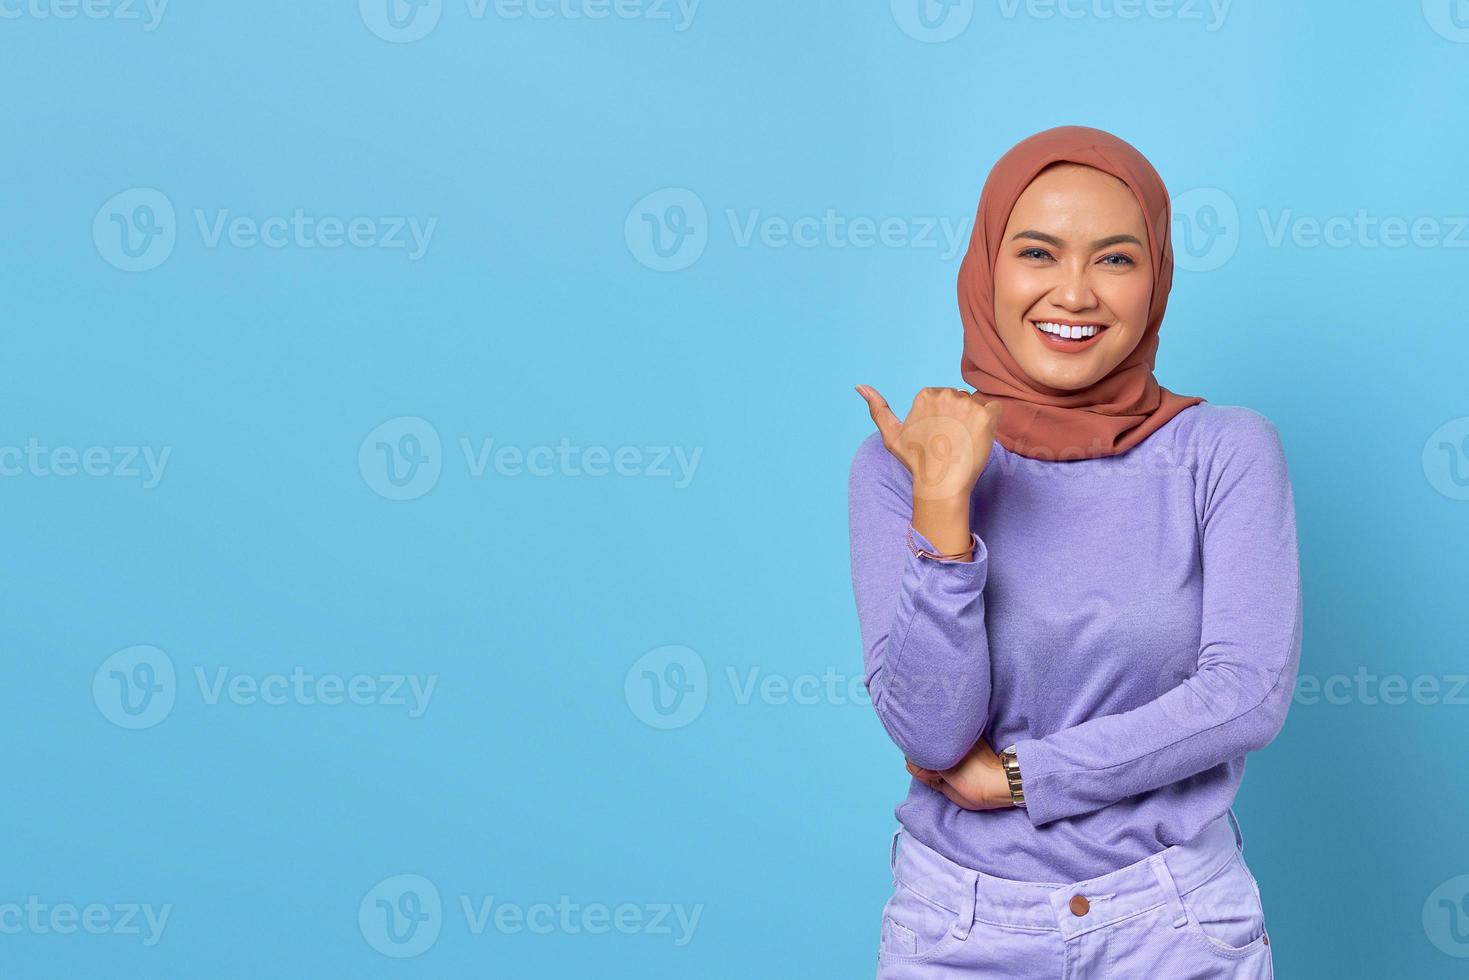 retrato, de, sonriente, joven, mujer asiática, señalar con el pulgar, en, copia, espacio, en, fondo azul foto